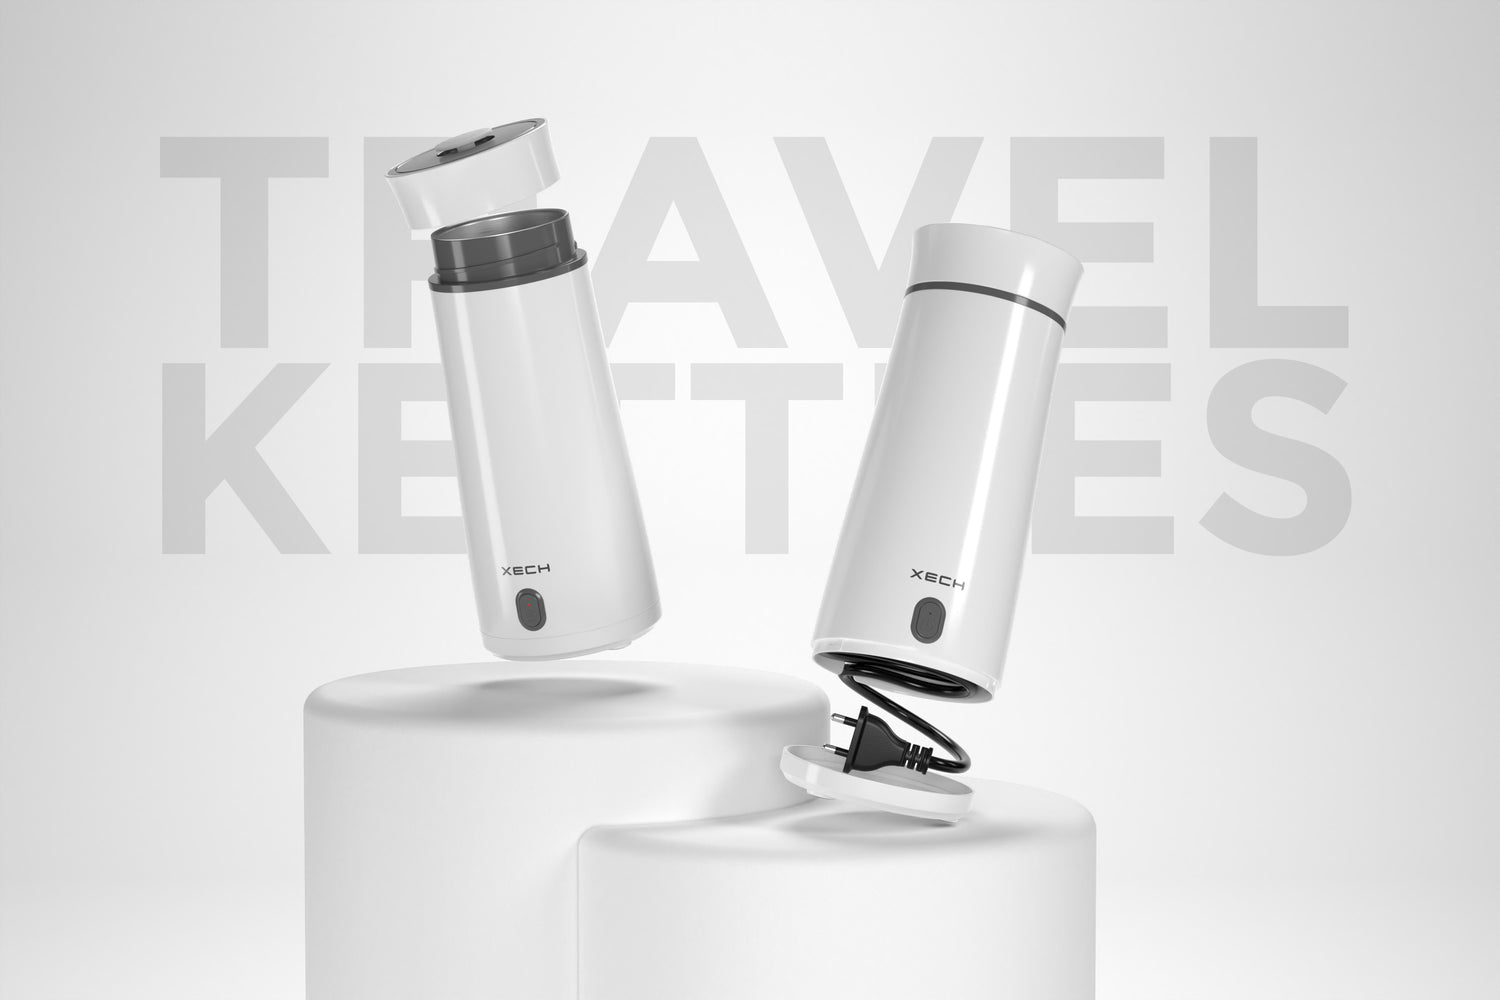 Hydroboil - Portable Electric Travel Kettle – XECH